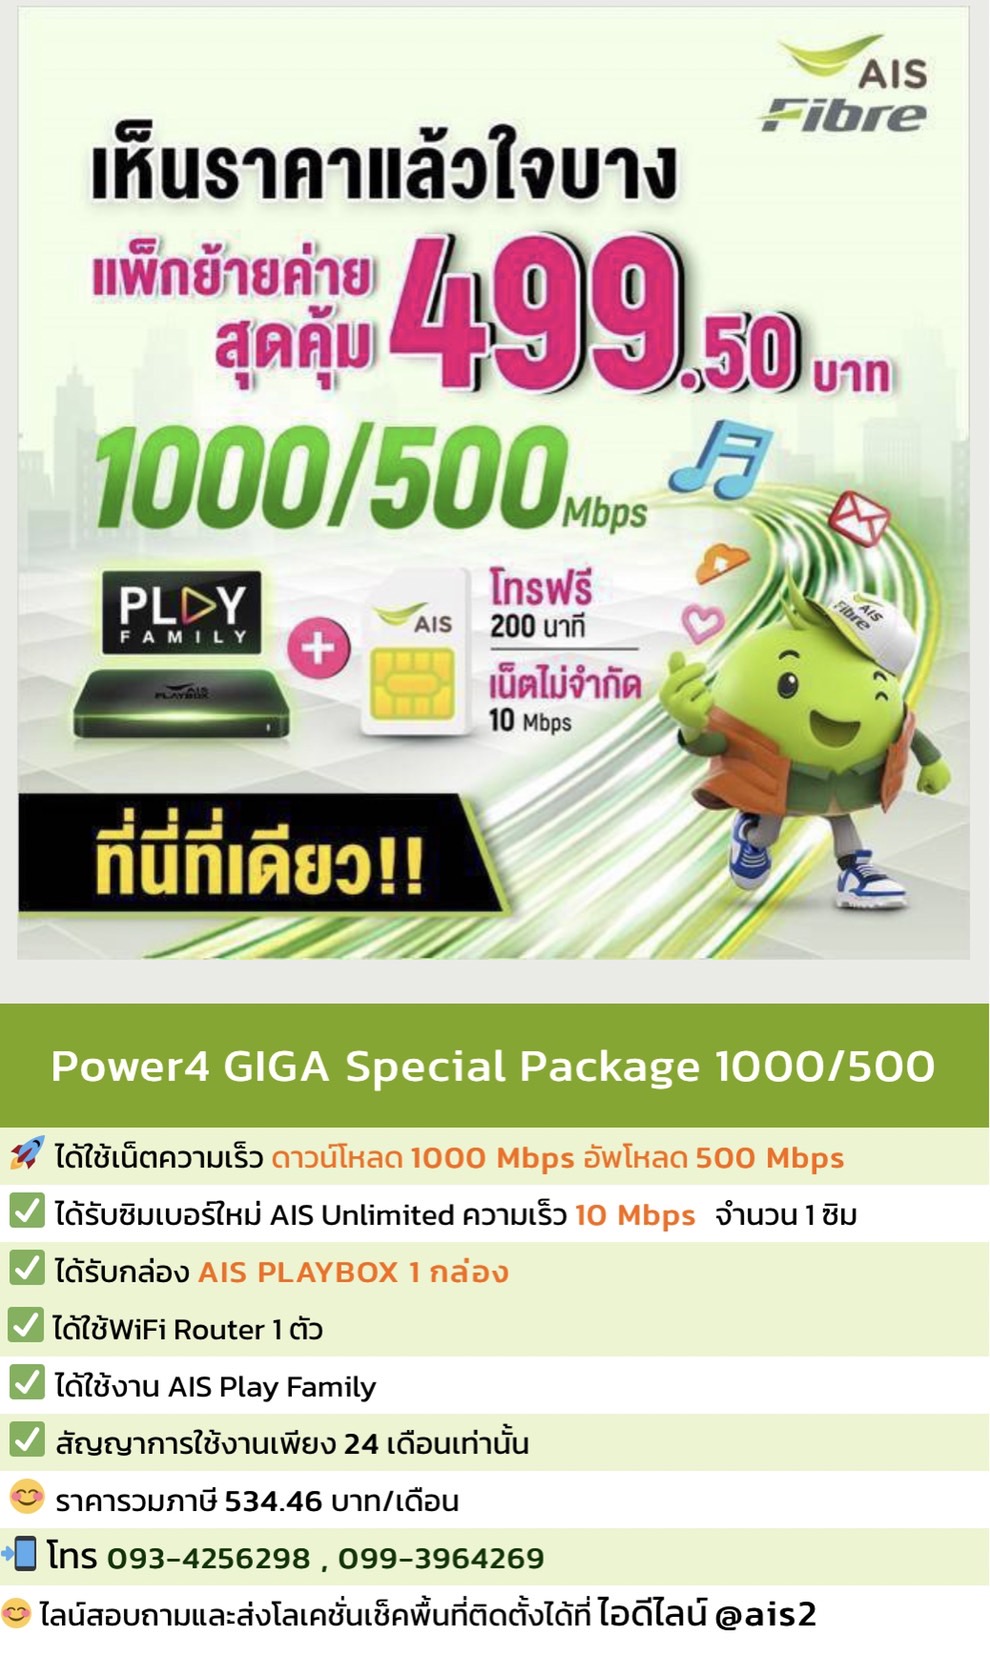 แพ็กเกจ Power4 GIGA Special ความเร็ว 1000/500 